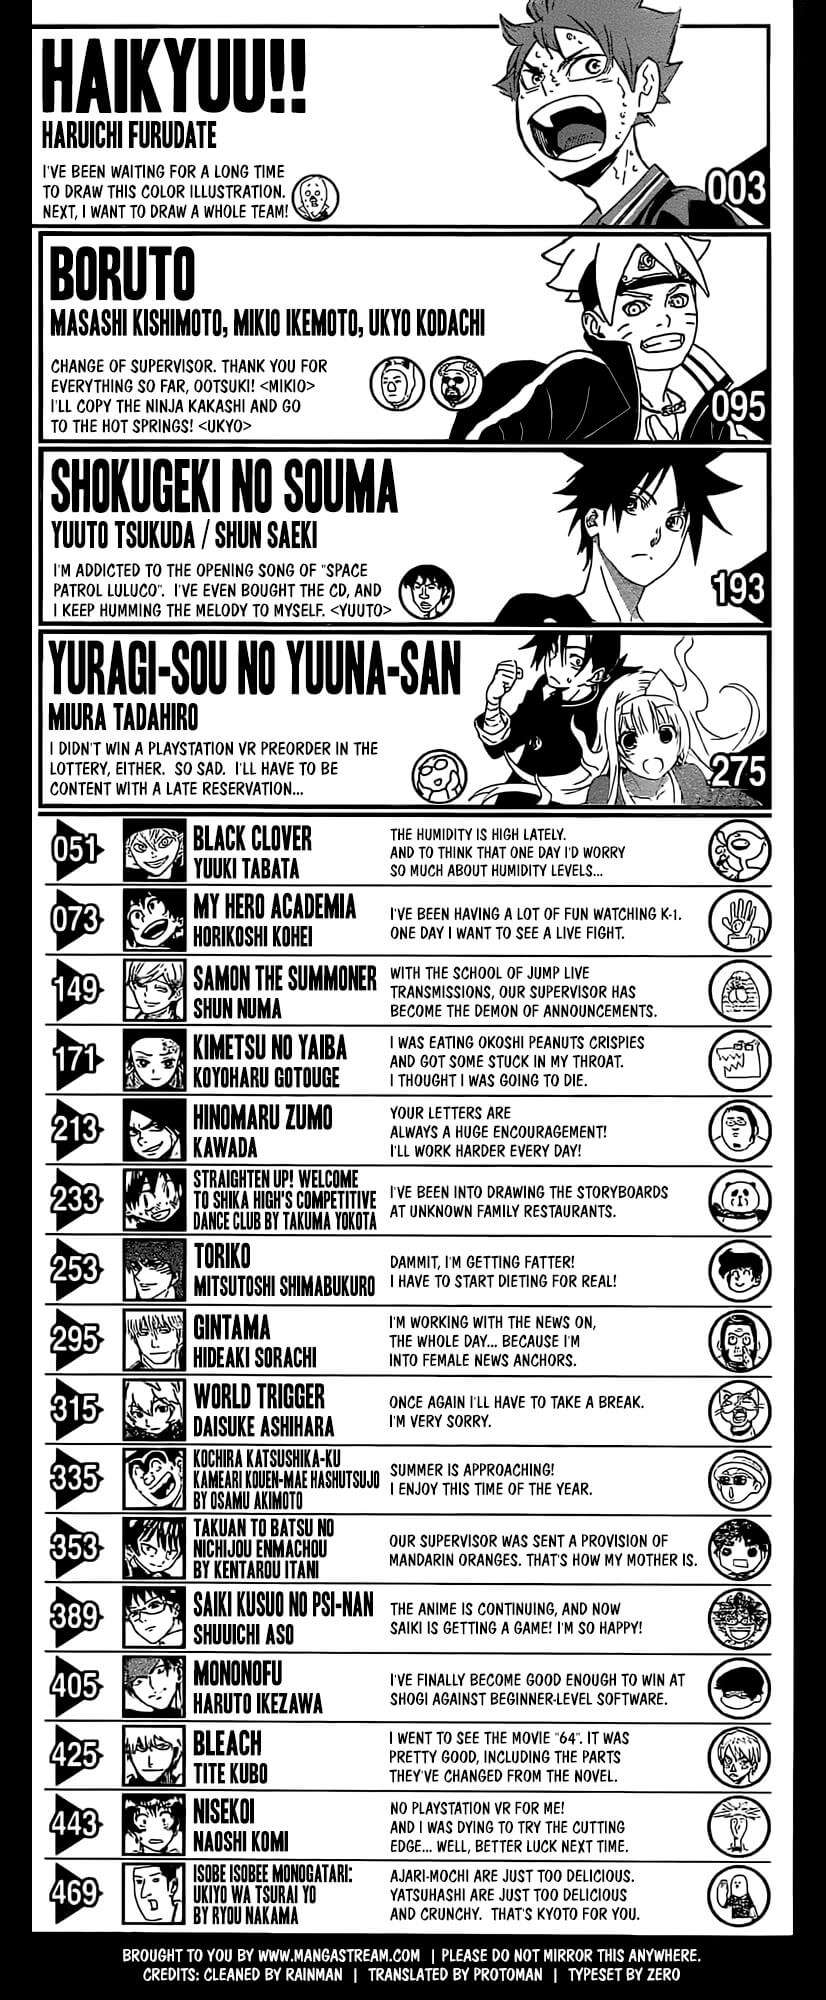 Shonen Jump Volume 32 Comentarios Autores